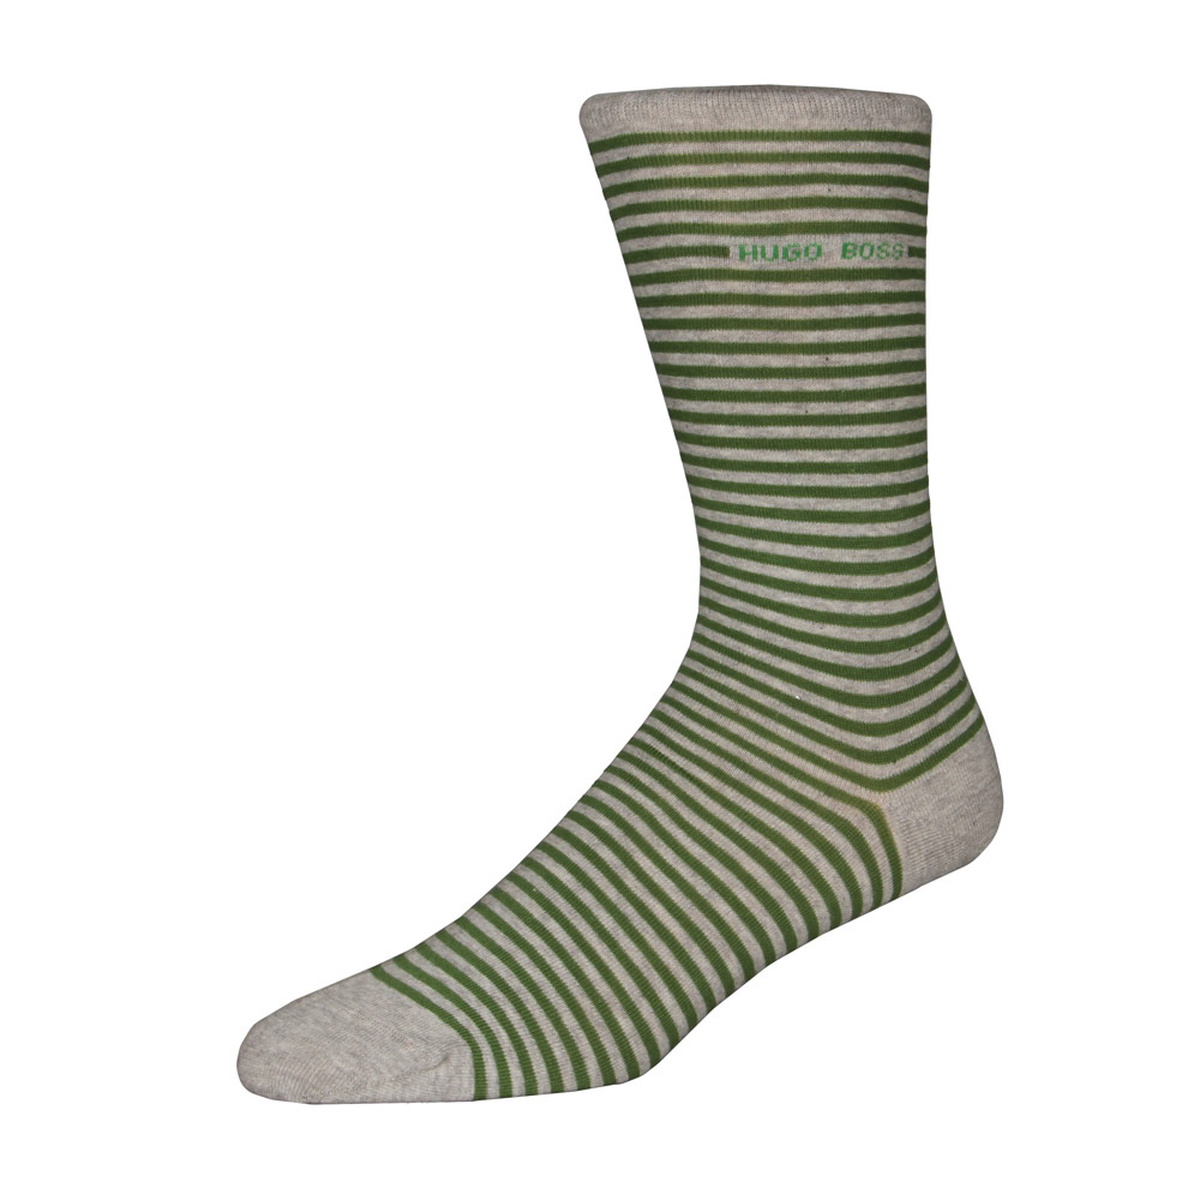 Socks - Striped Green